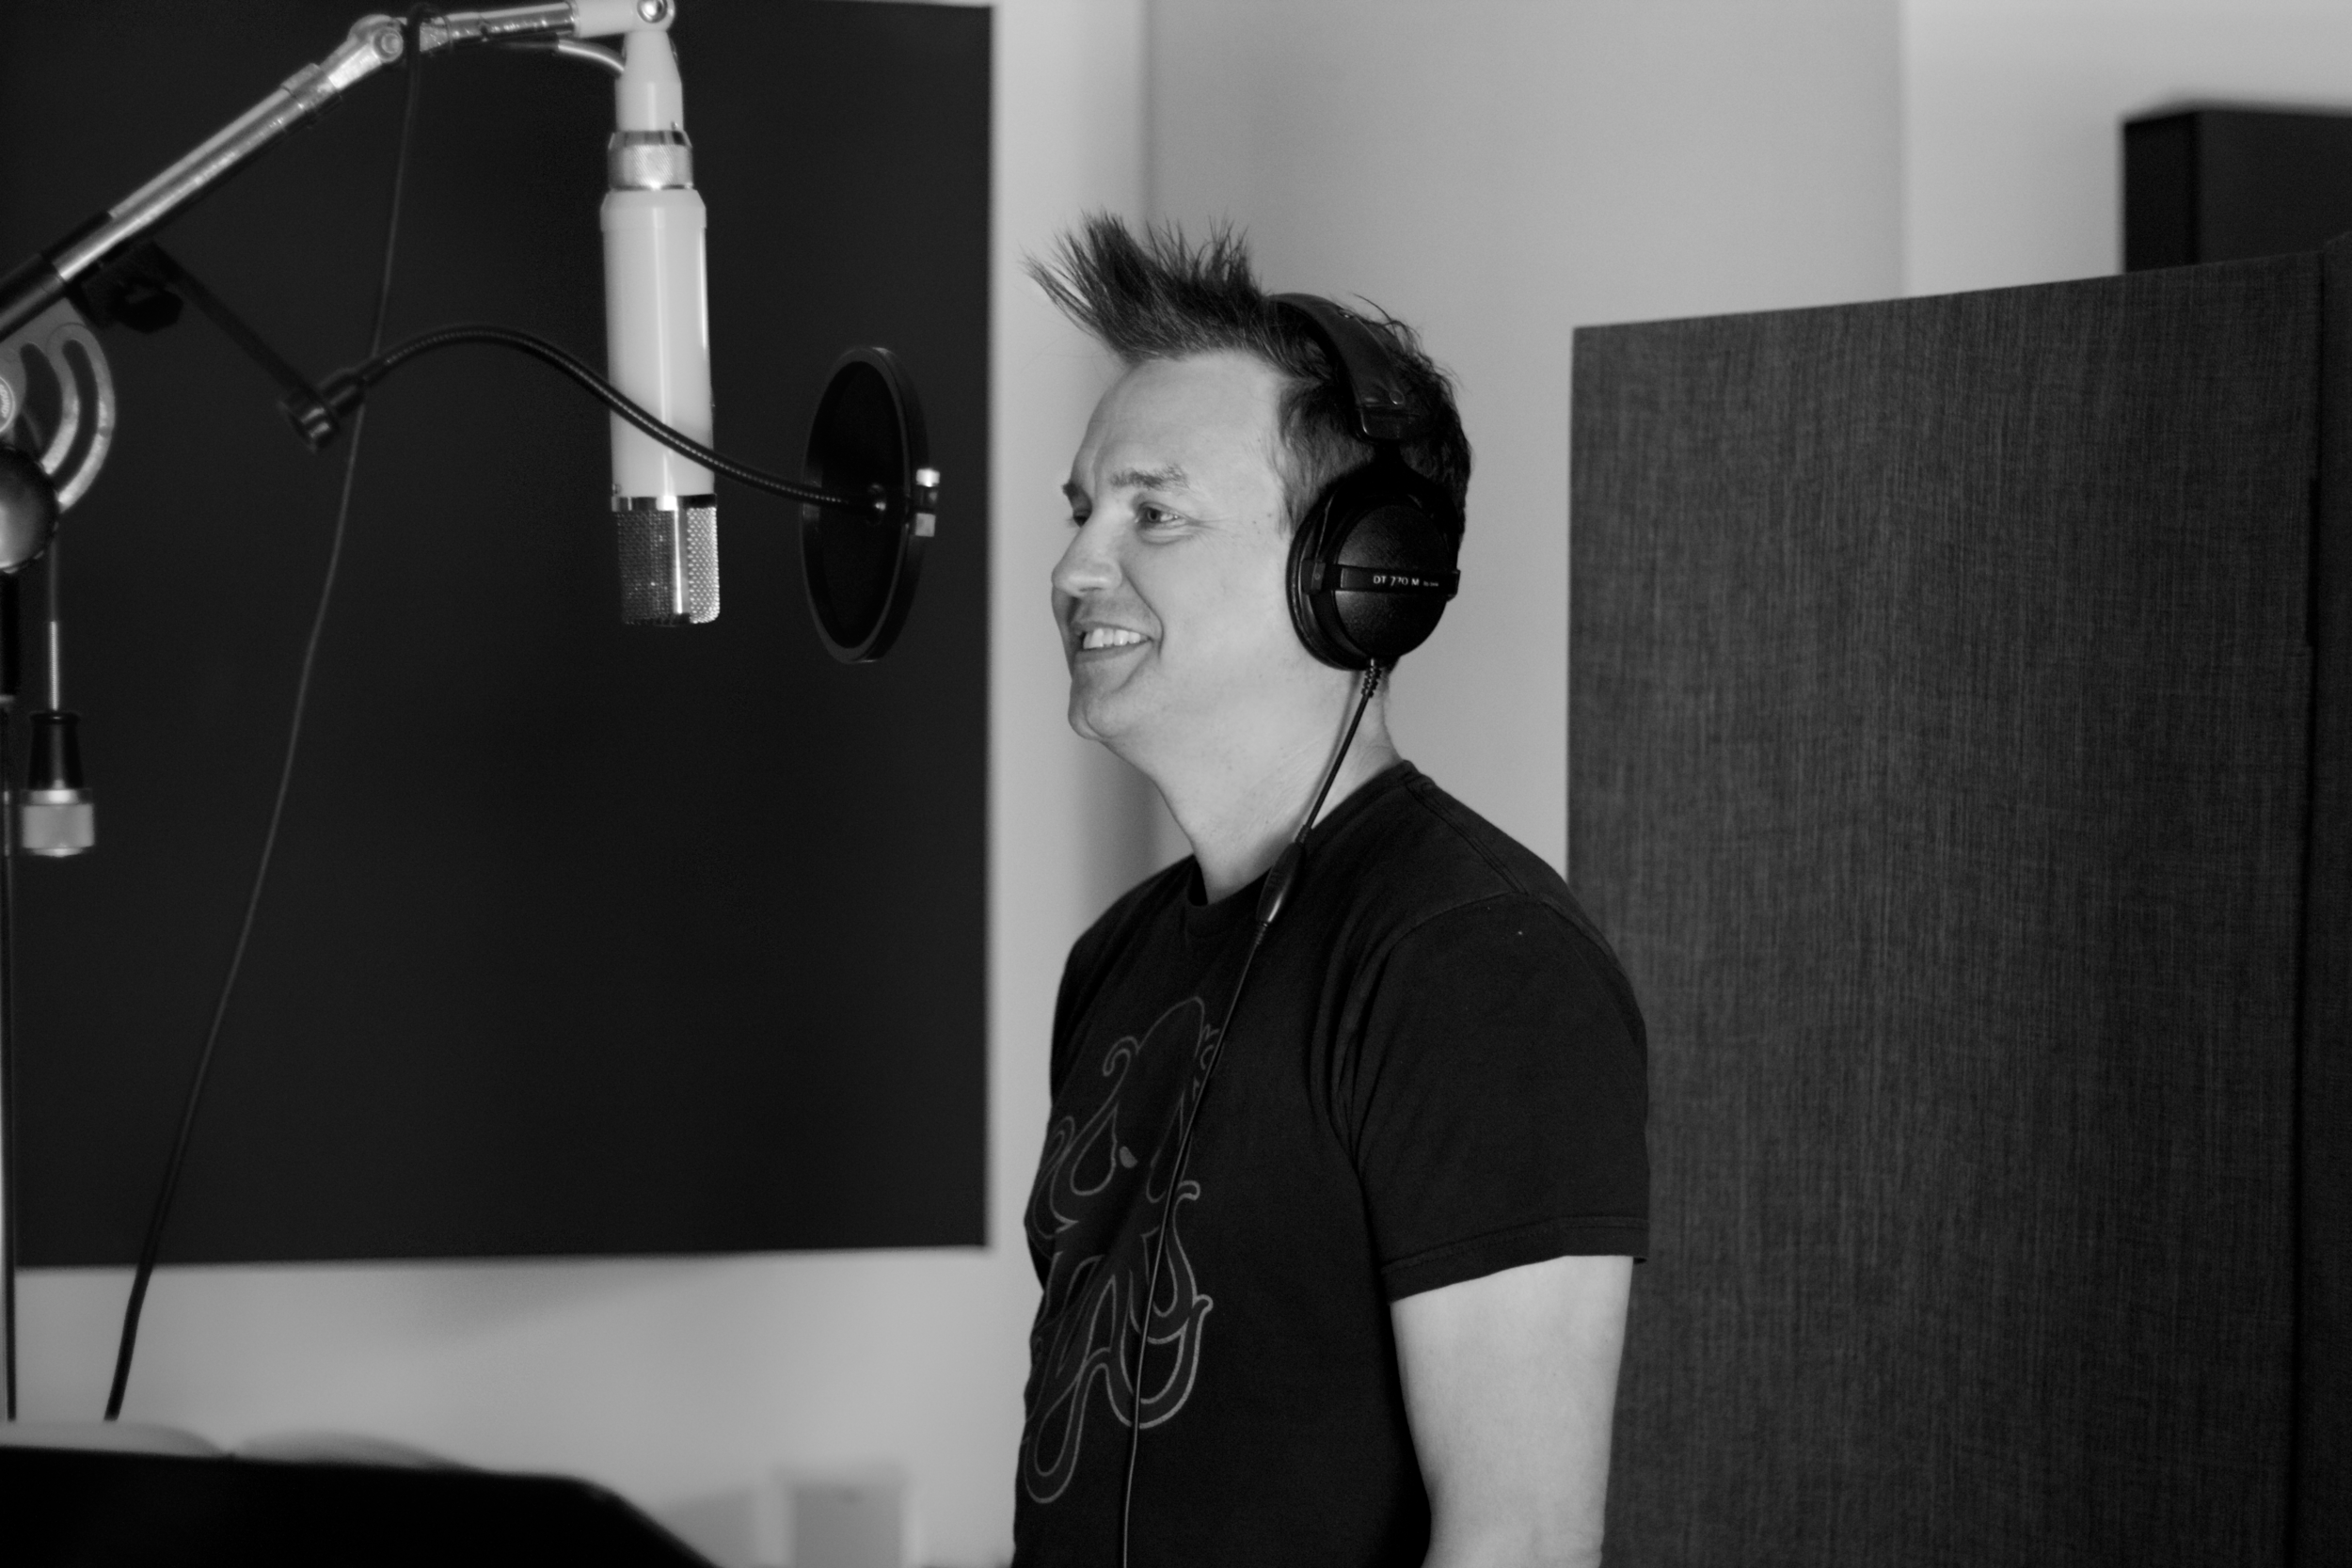  Mark Hoppus recording Vocals for Grammy Nominated album “California” at Foxy Studios 